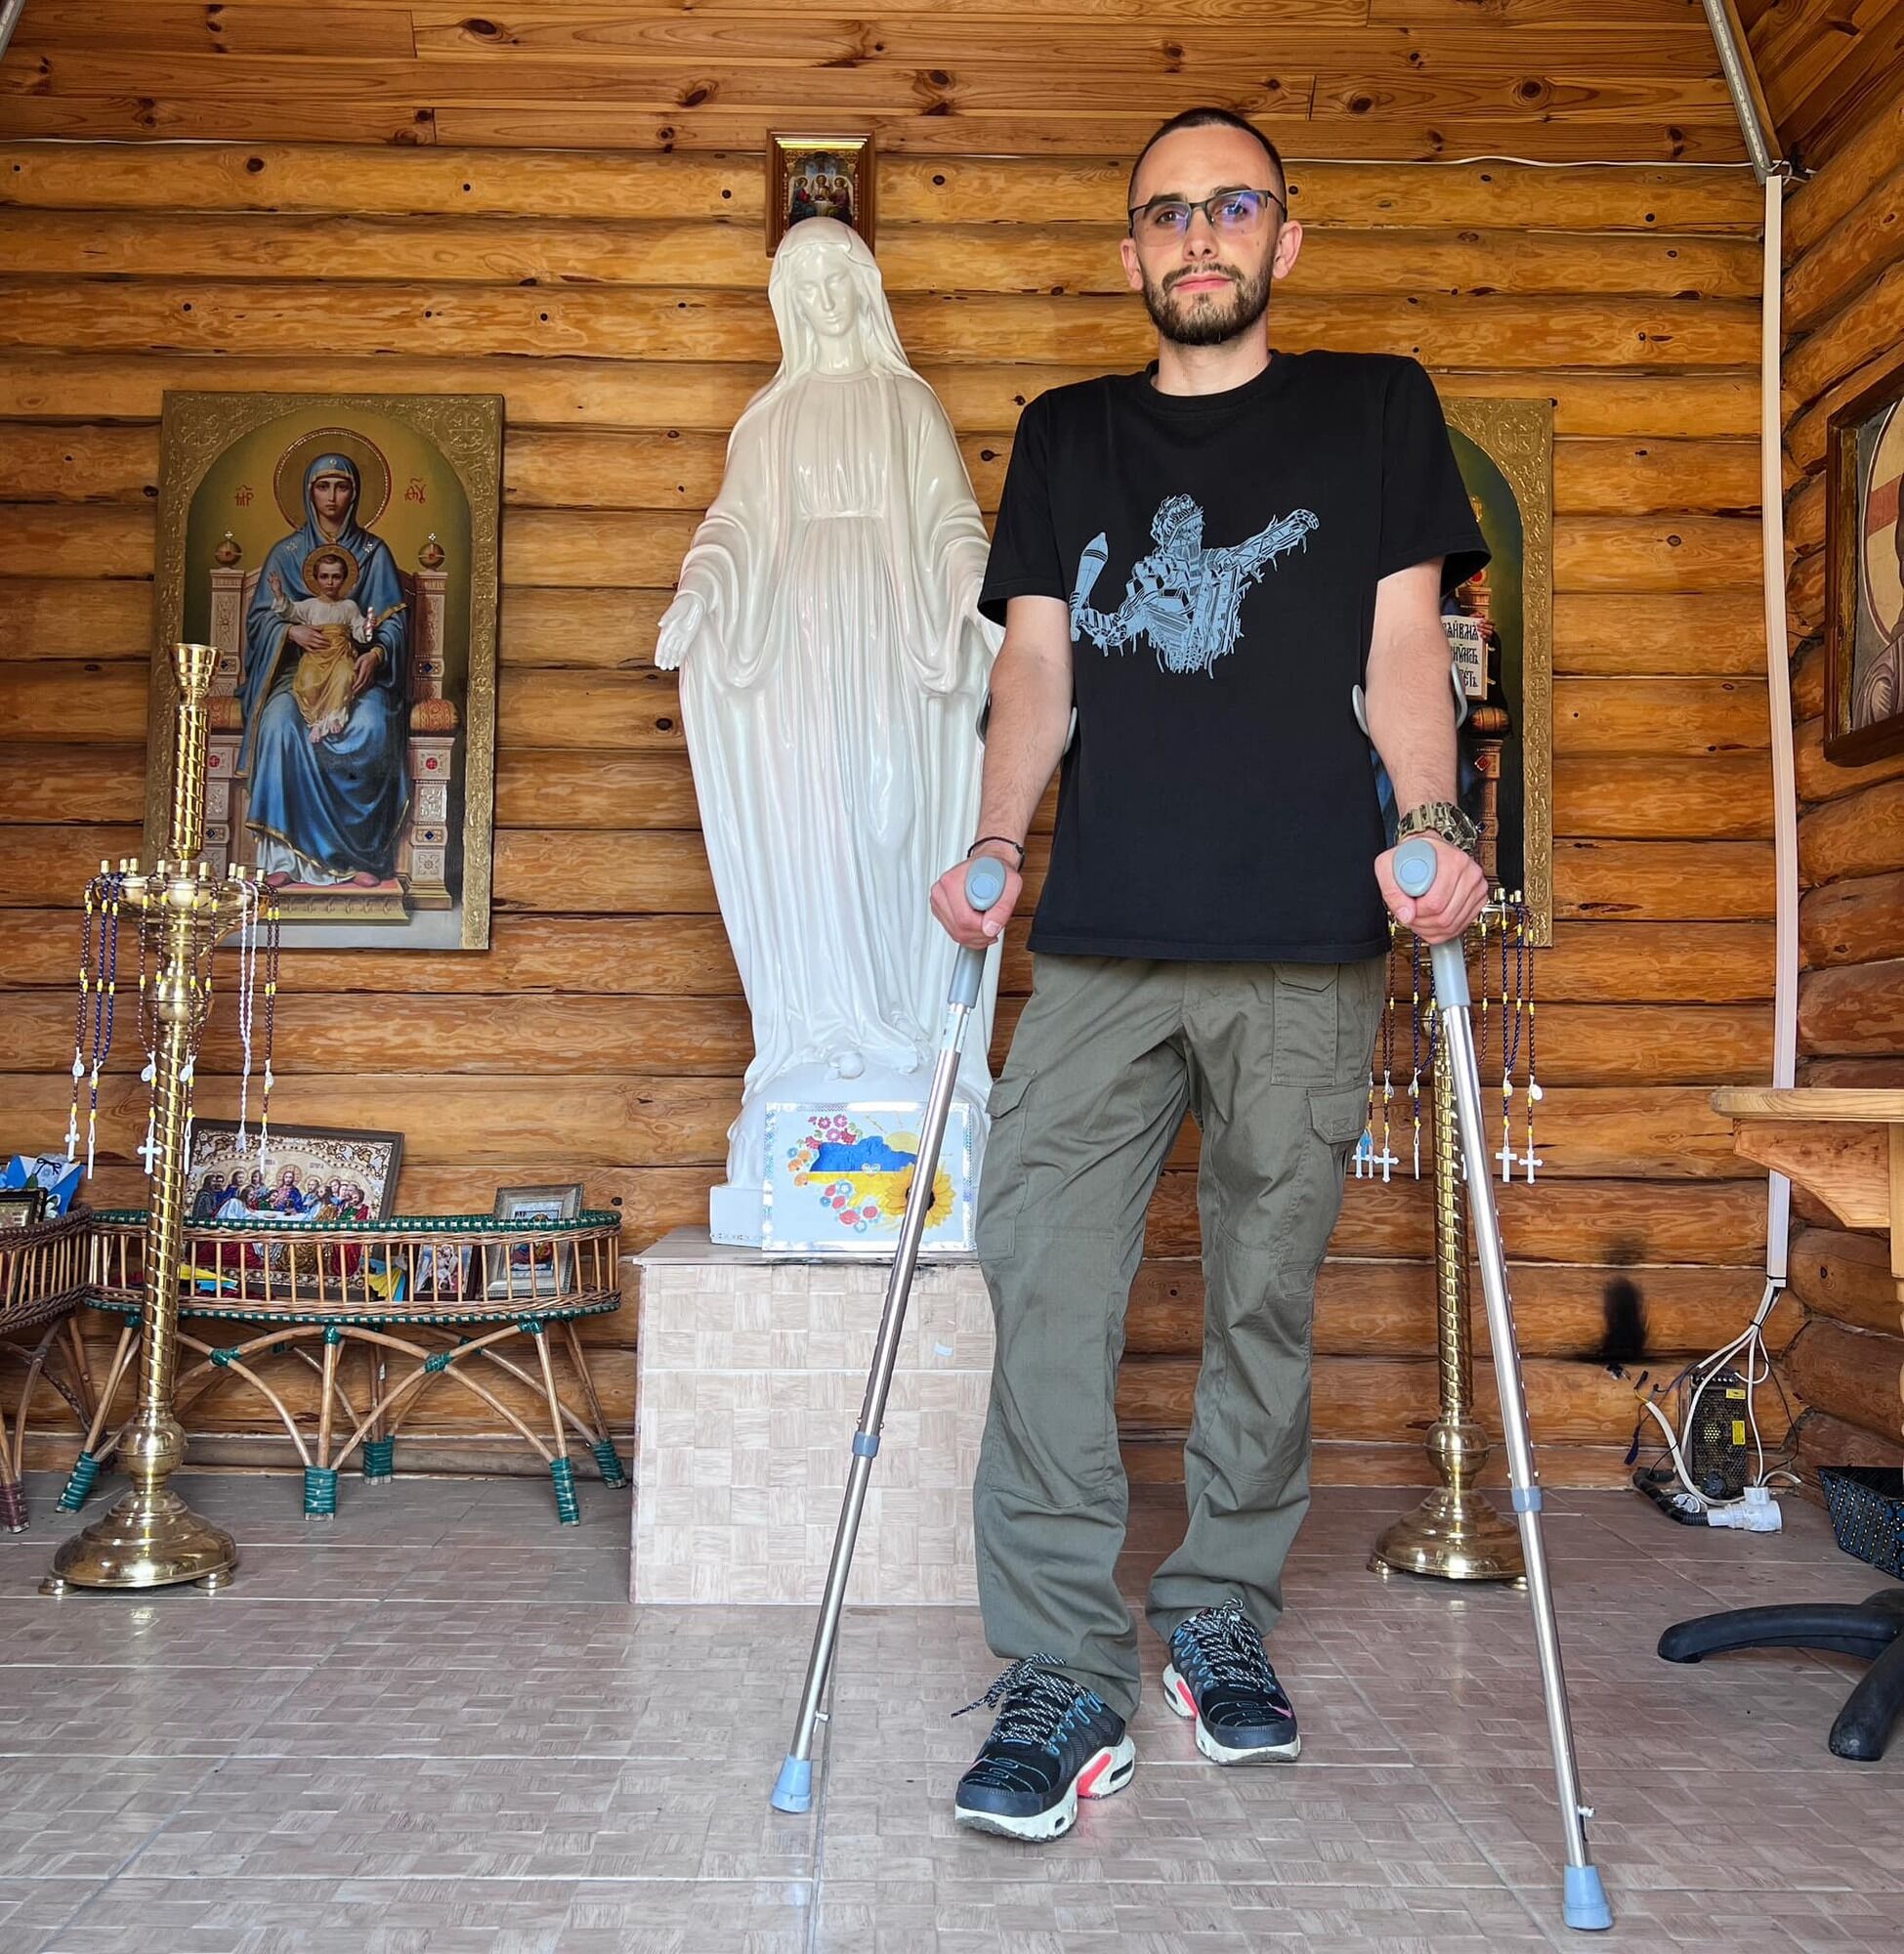 "У тебя же нога есть, я ее визуально вижу": в Харькове члены МСЭК издевались над раненым бойцом. Подробности скандала